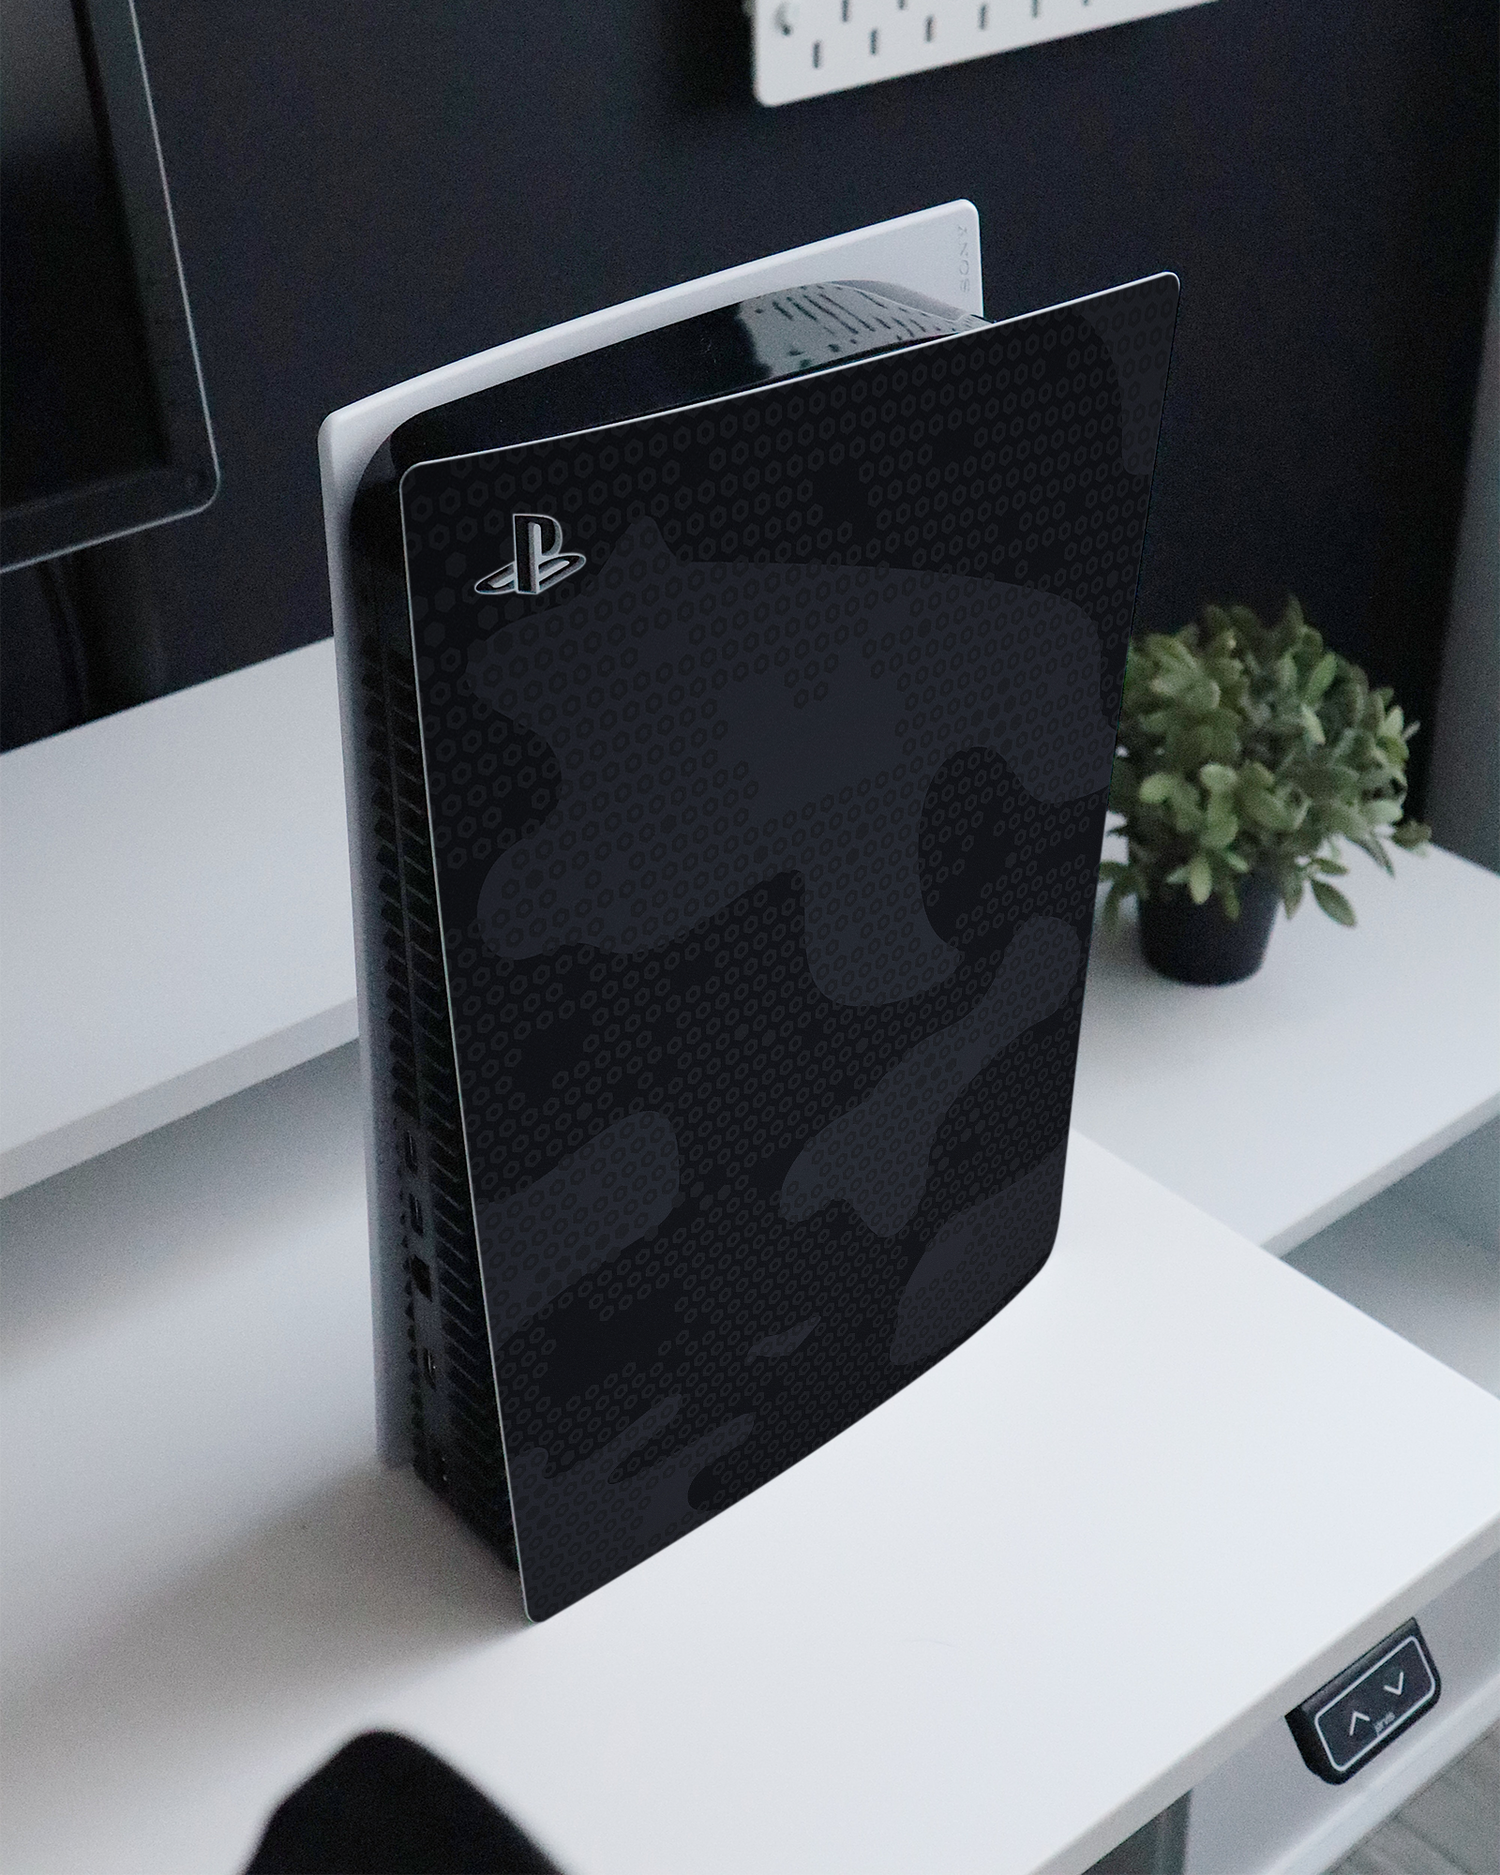 Spec Ops Dark Konsolen Aufkleber für Sony PlayStation 5 auf einem Sideboard